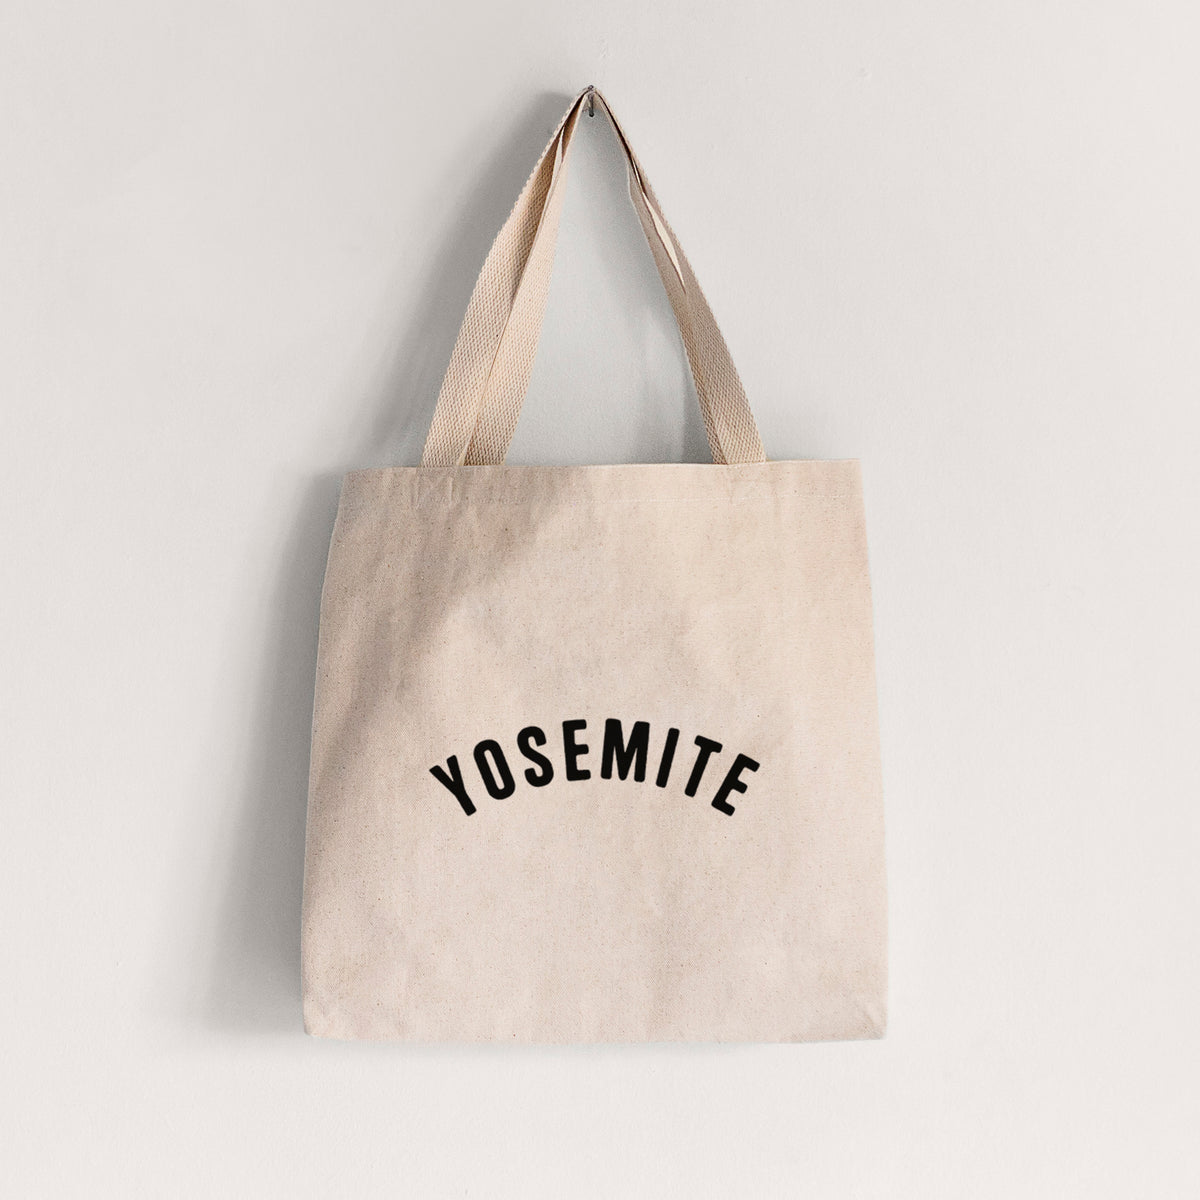 Yosemite - Tote Bag